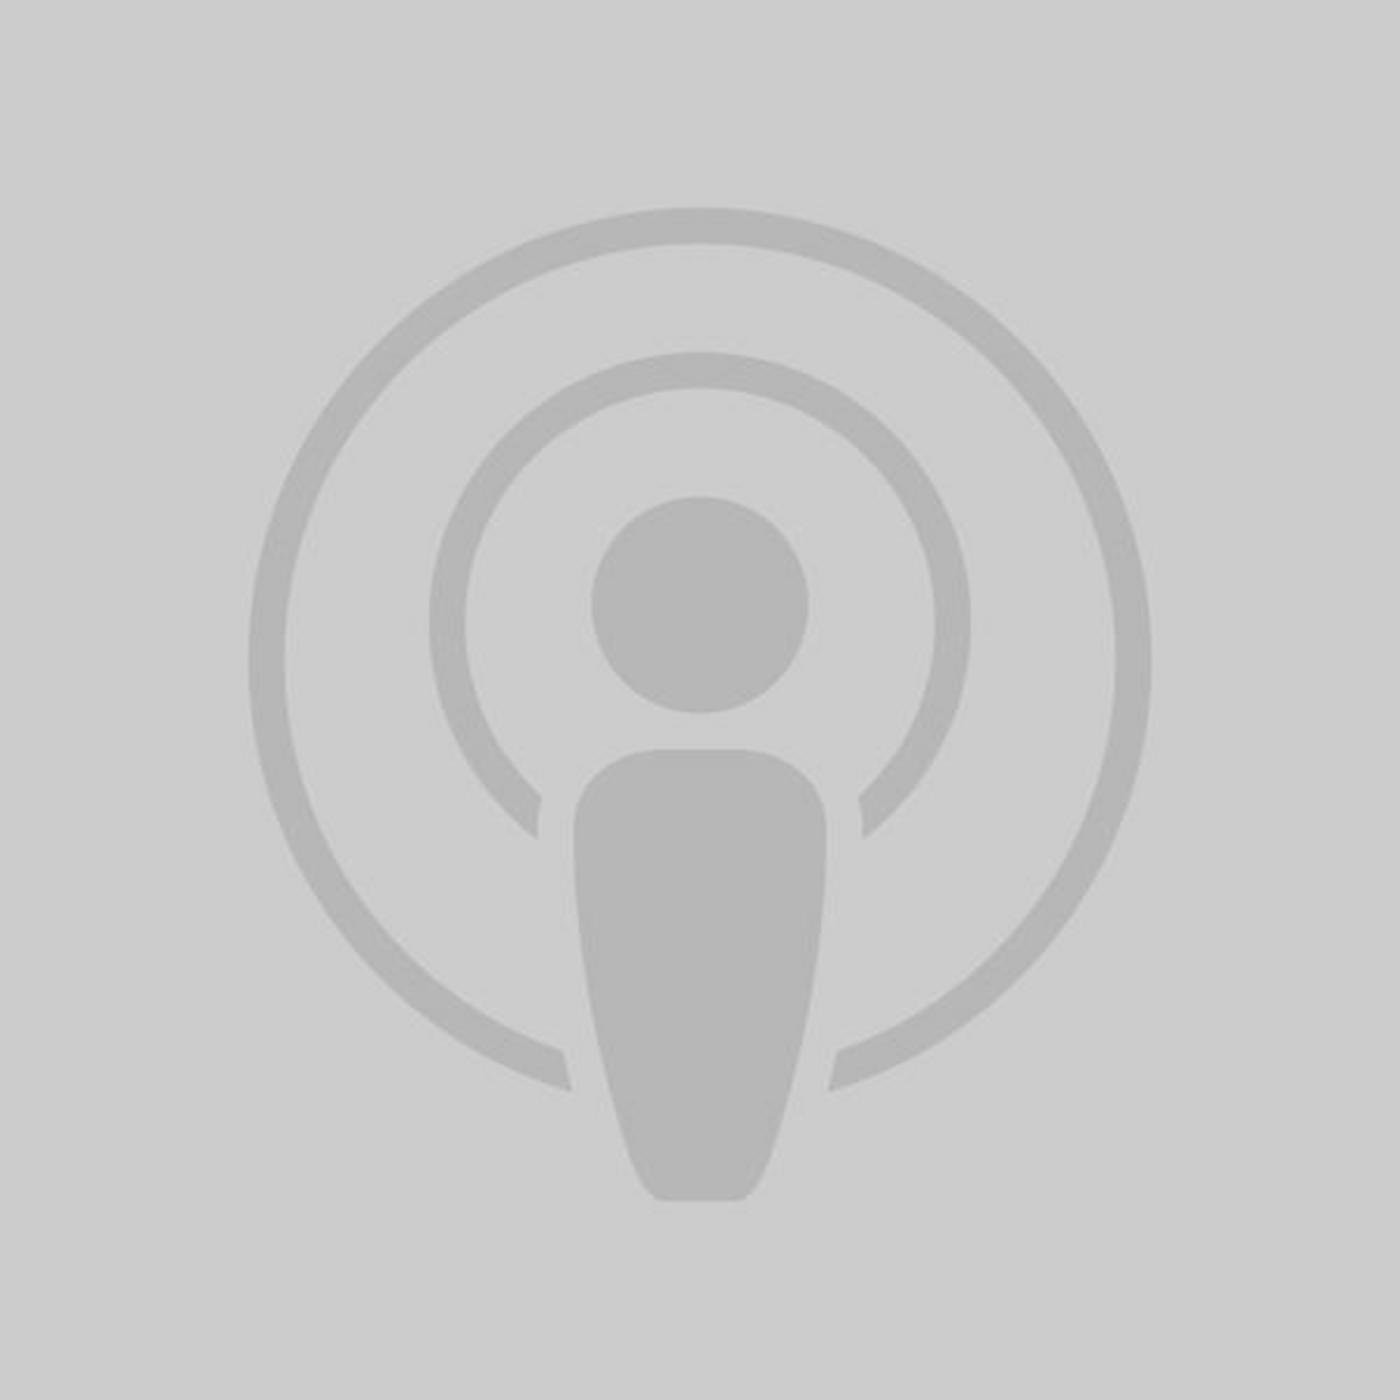 Neologism: 'Podcast' Eastern Suret